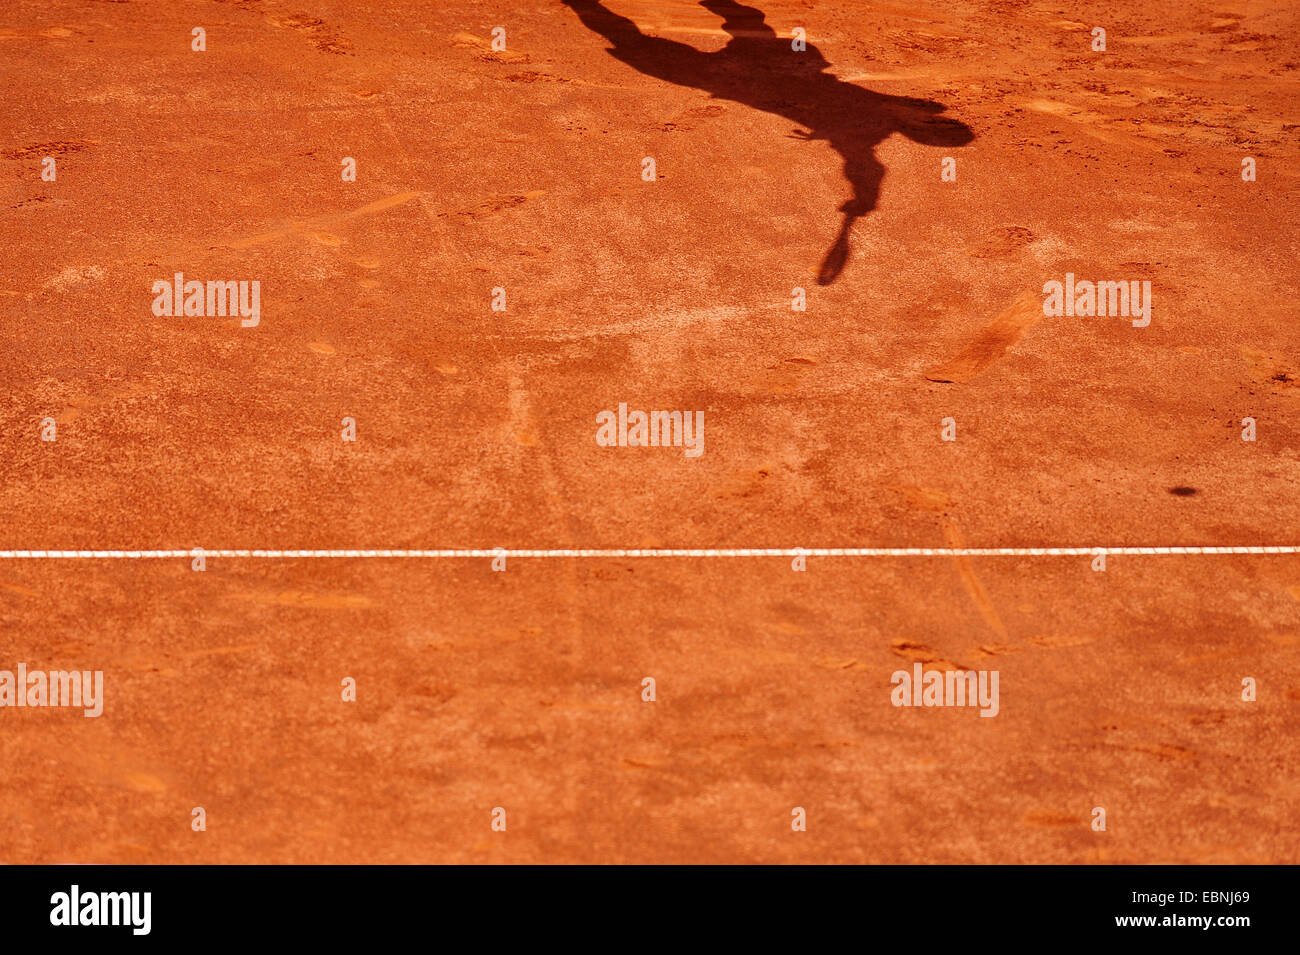 Sombra de un jugador de tenis que sirve en un tribunal de arcilla Foto de stock